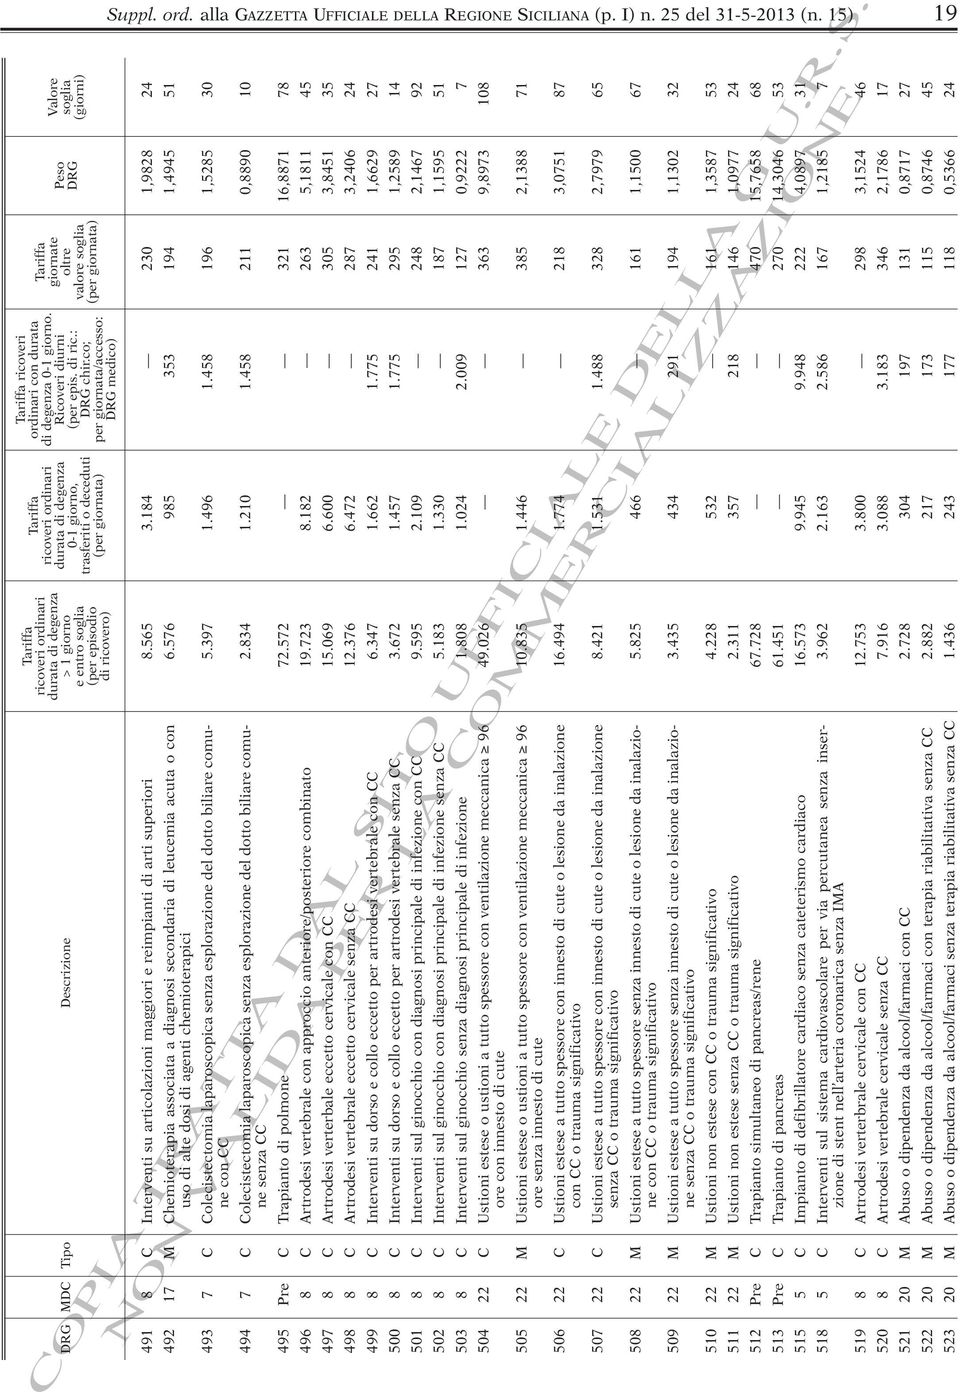 di ricovero) Descrizione Tipo DRG MDC Suppl. ord. alla GAZZETTA UFFICIALE DELLA REGIONE SICILIANA (p. I) n. 25 del 31-5-2013 (n.